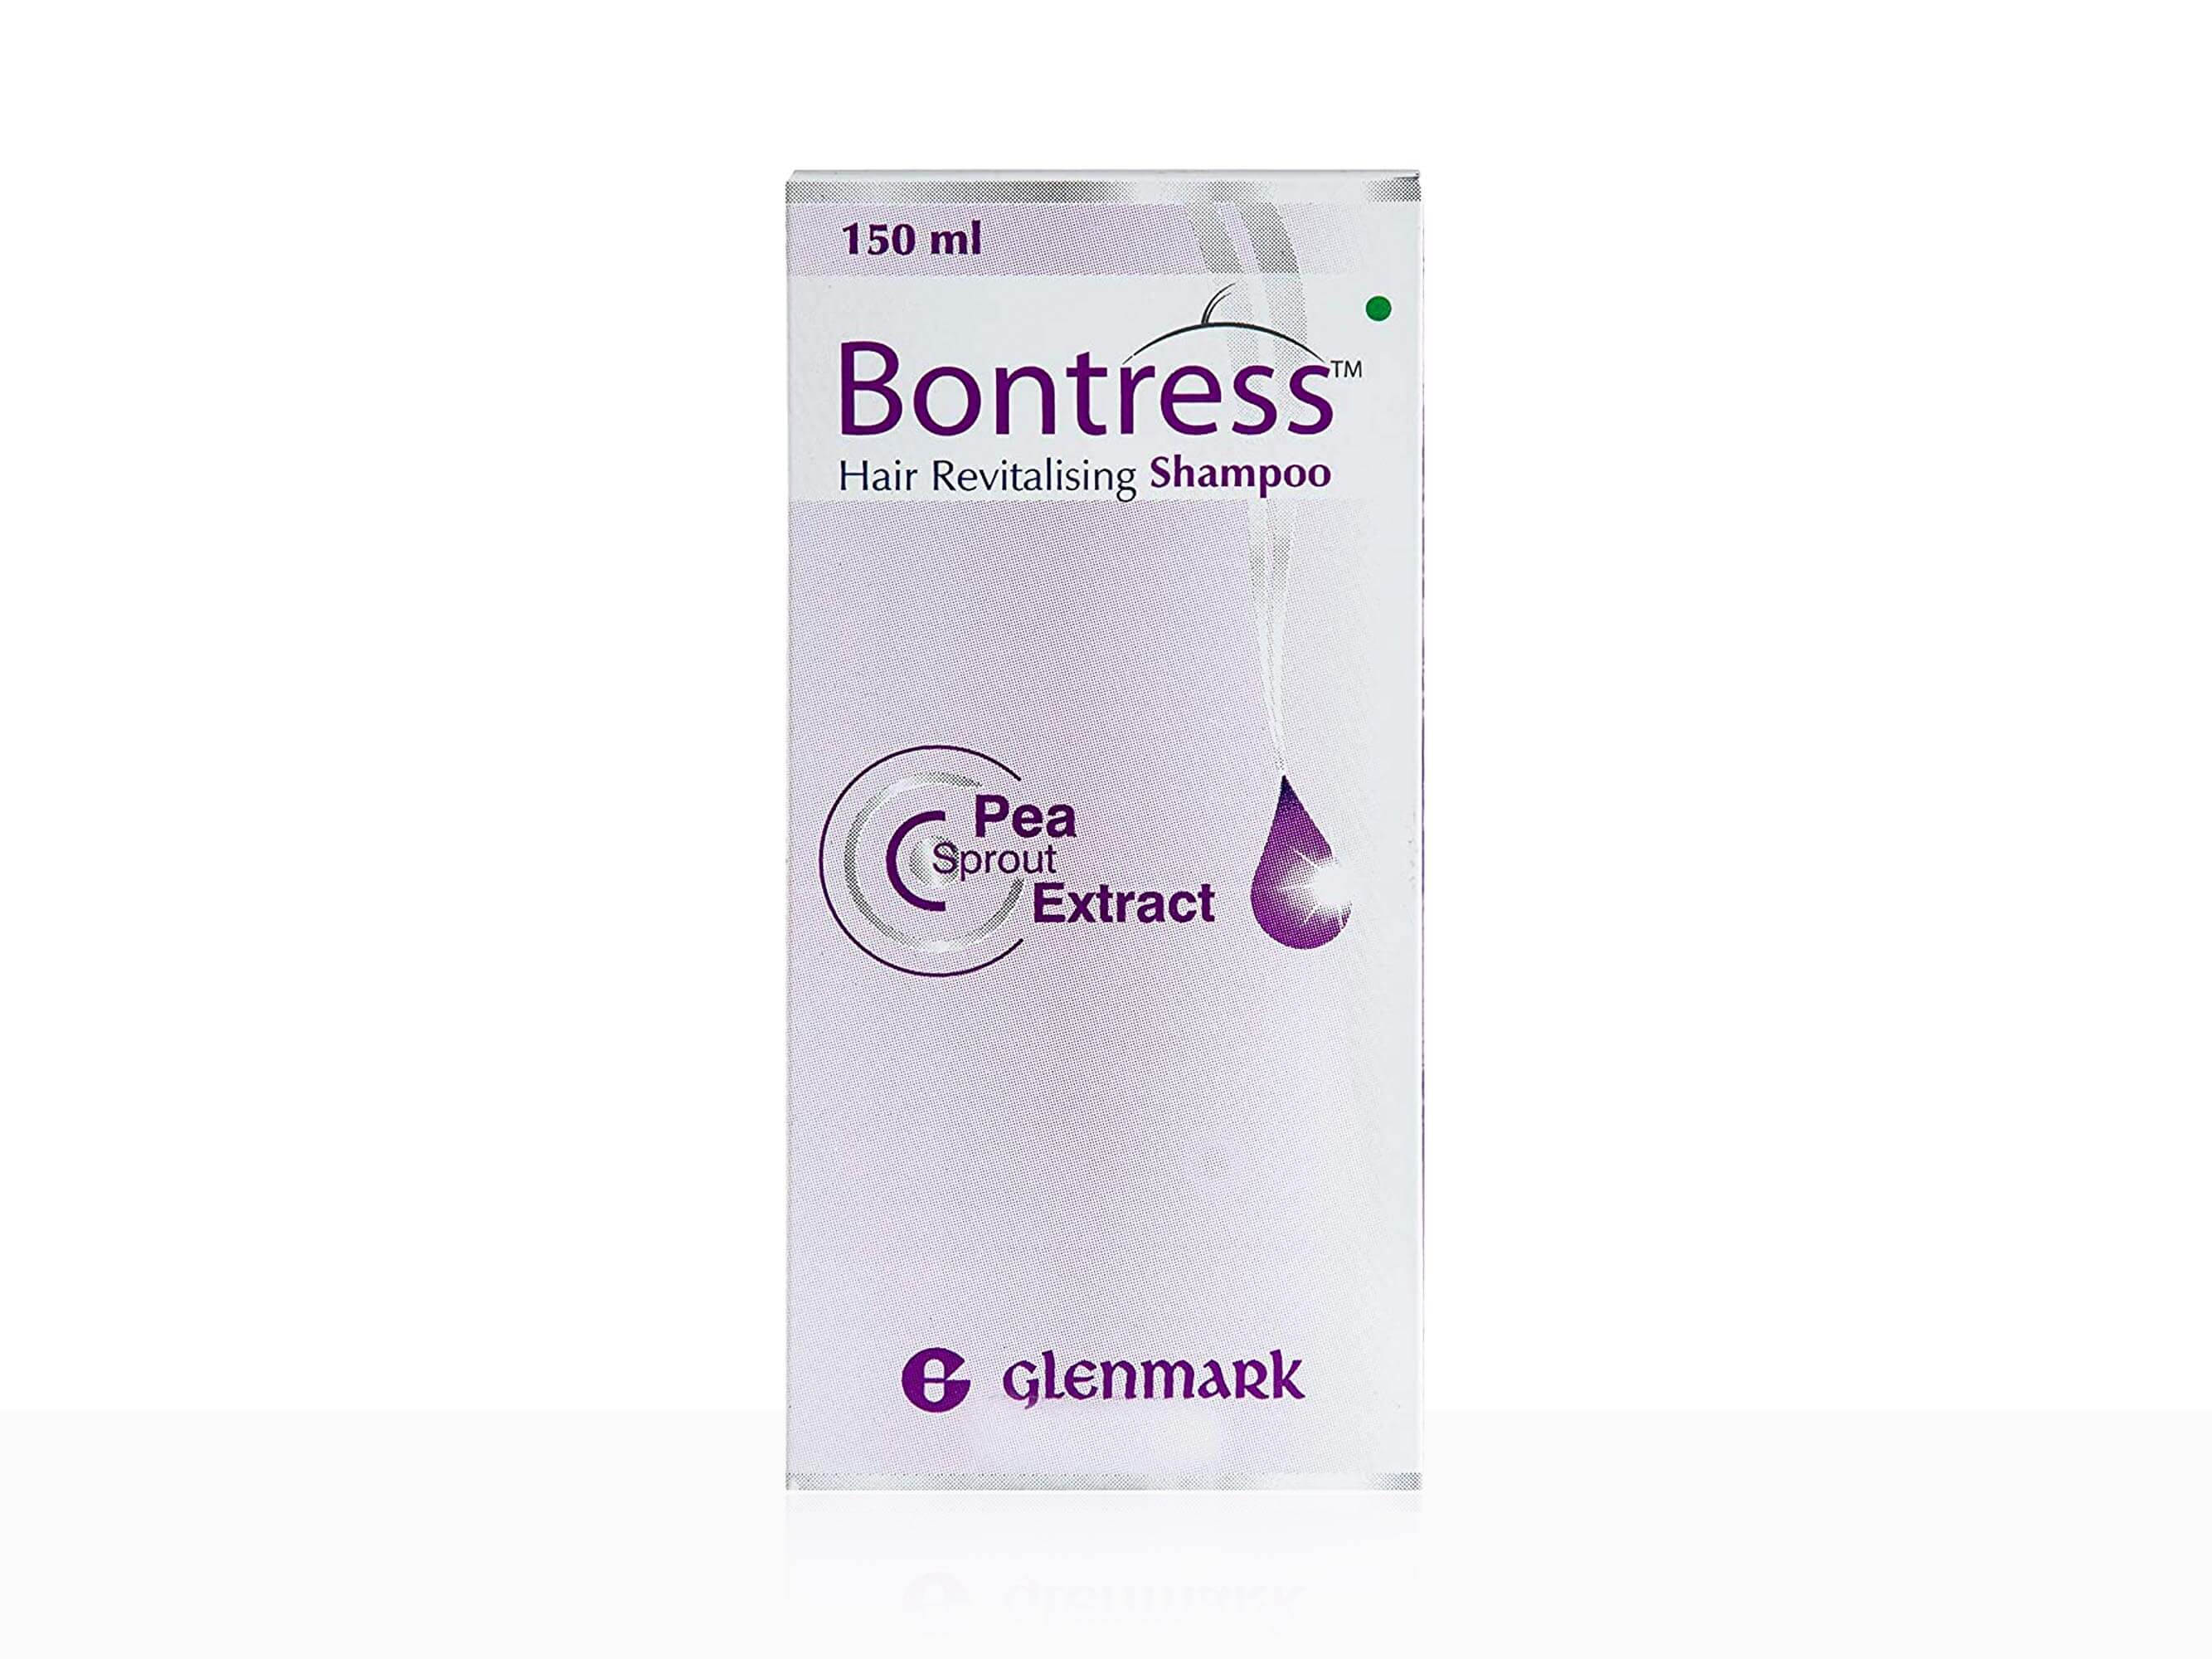 Bontress Hair Revitalising Shampoo - Clinikally